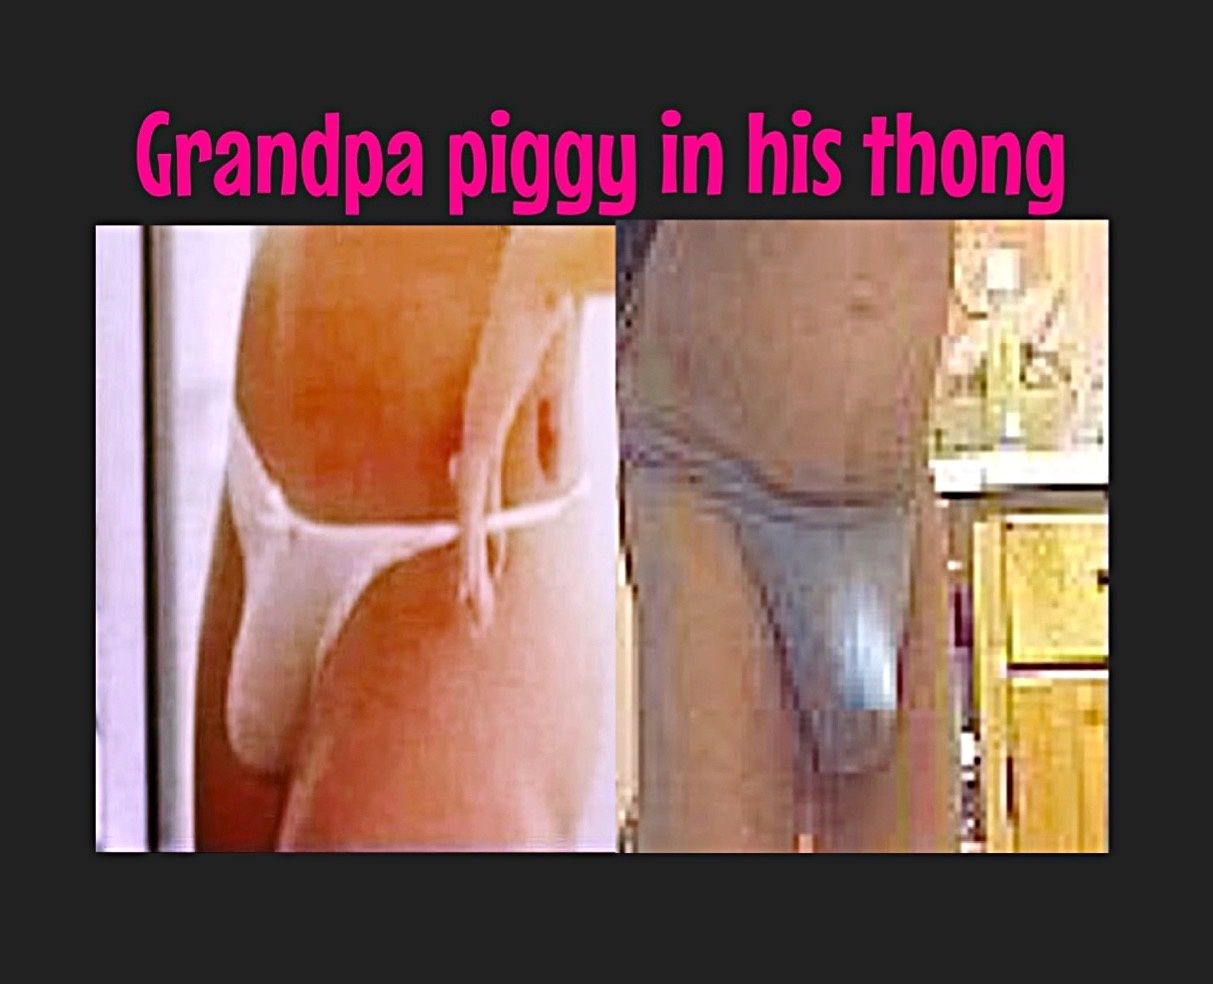 Piggy in thongs